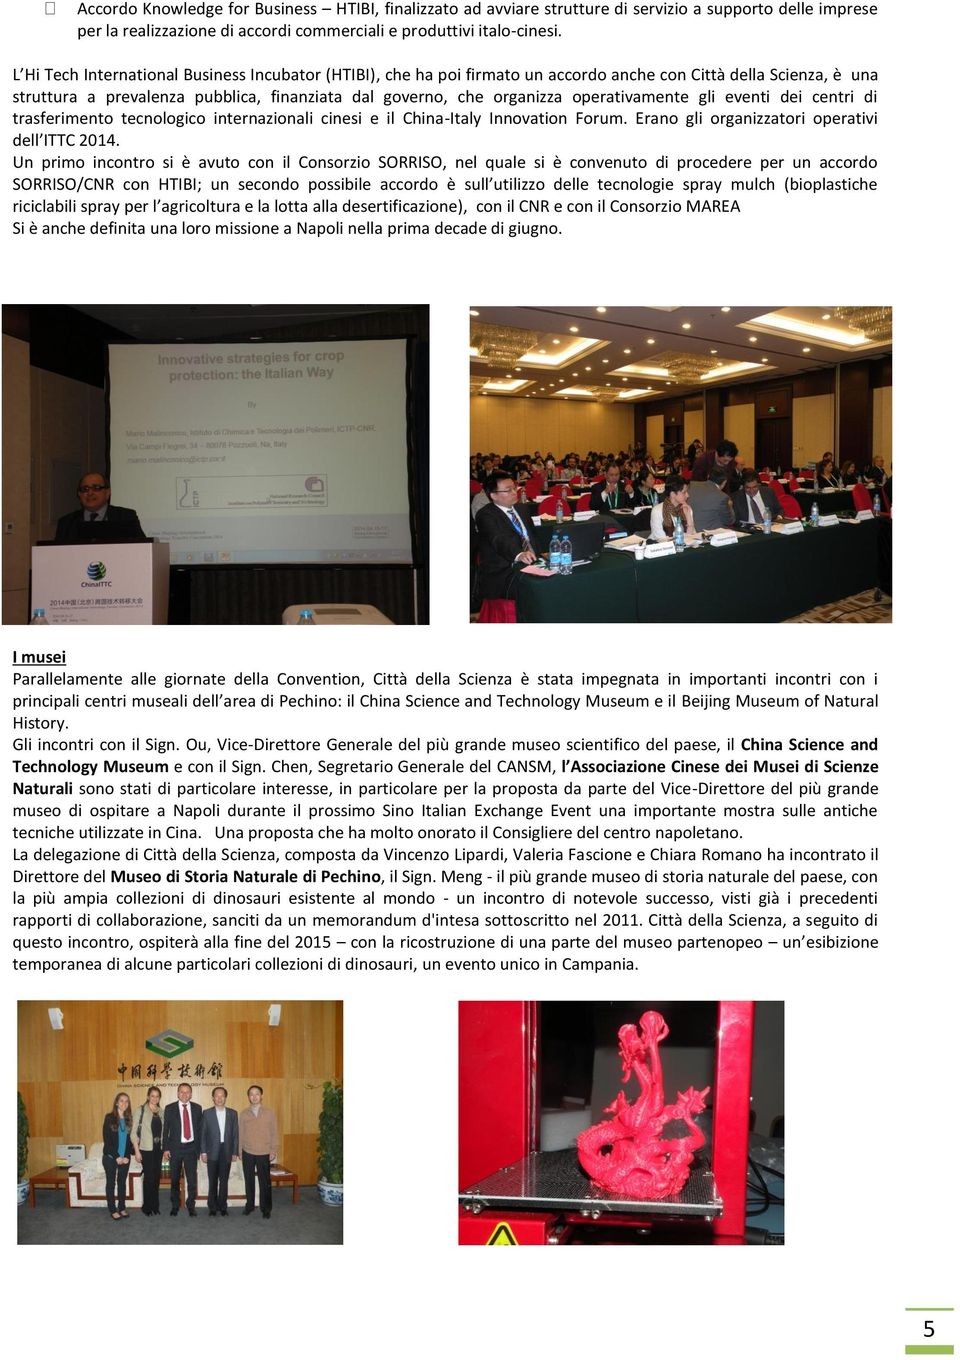 operativamente gli eventi dei centri di trasferimento tecnologico internazionali cinesi e il China-Italy Innovation Forum. Erano gli organizzatori operativi dell ITTC 2014.